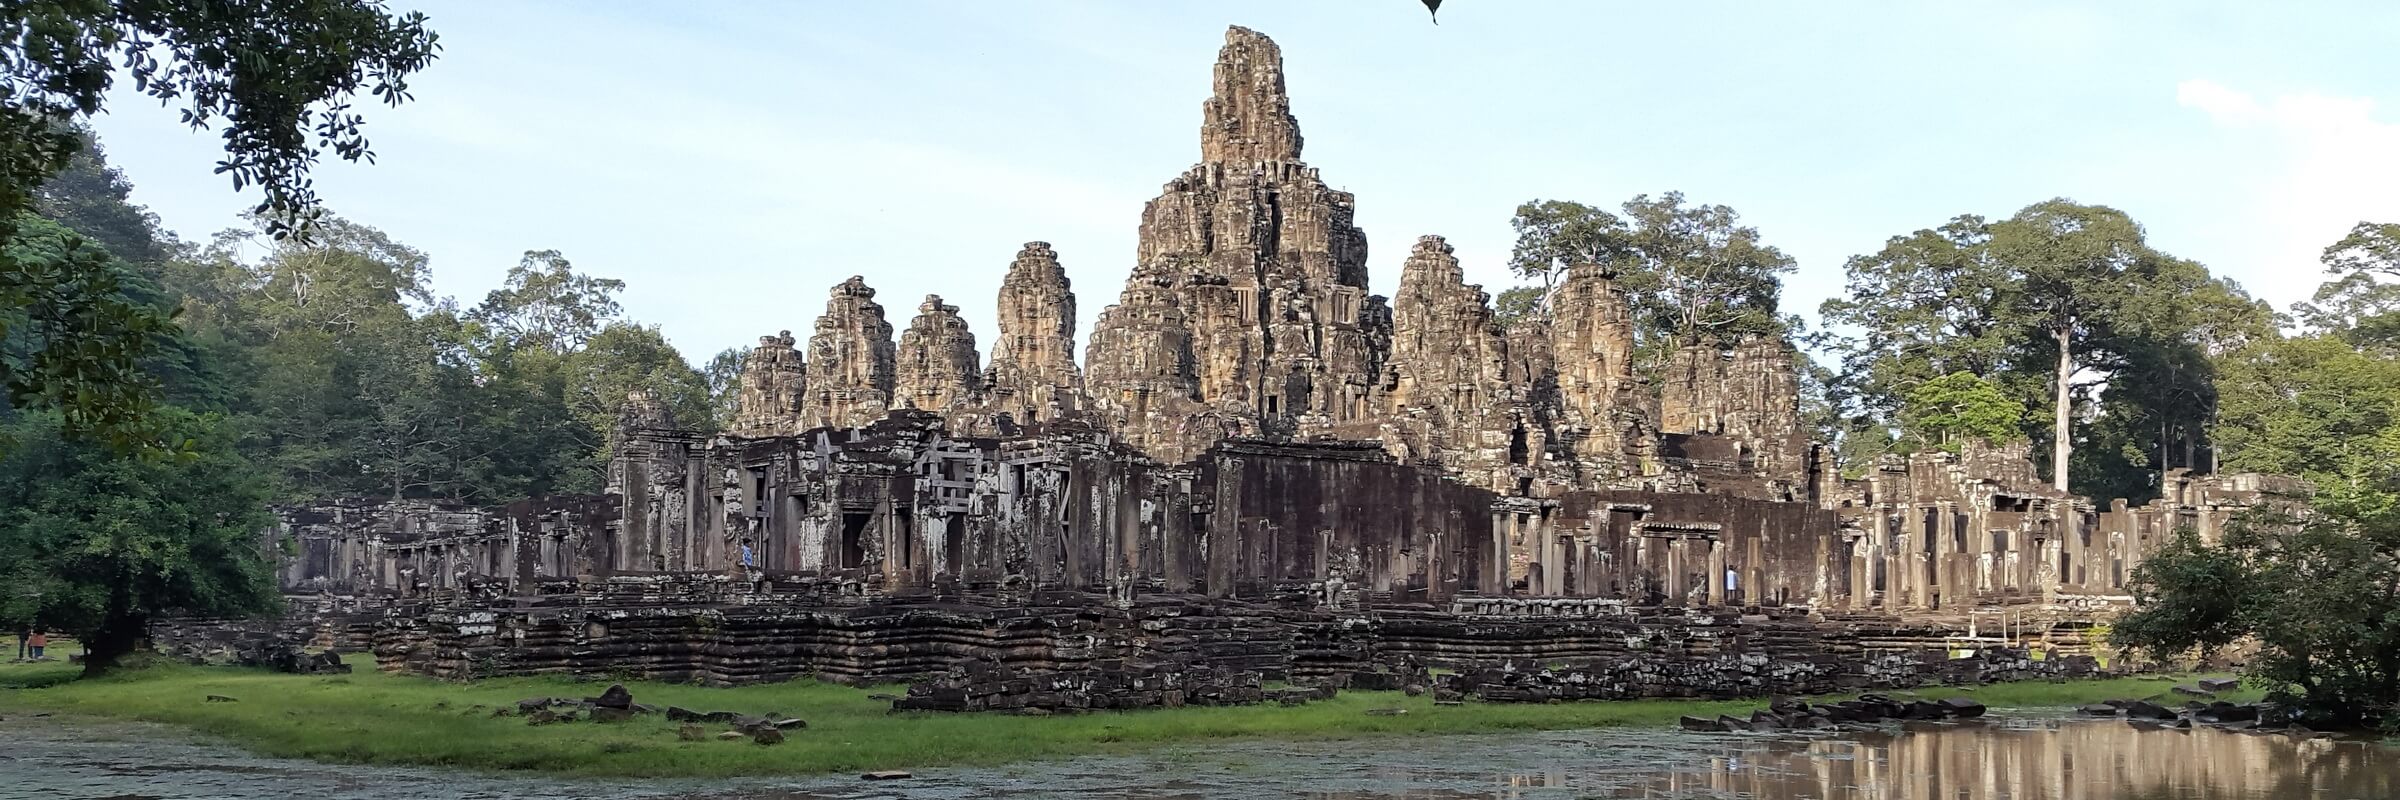 Bayon ist neben Angkor Wat und Ta Phrom die bekannteste und eindrucksvollste Tempelanlage in Angkor.